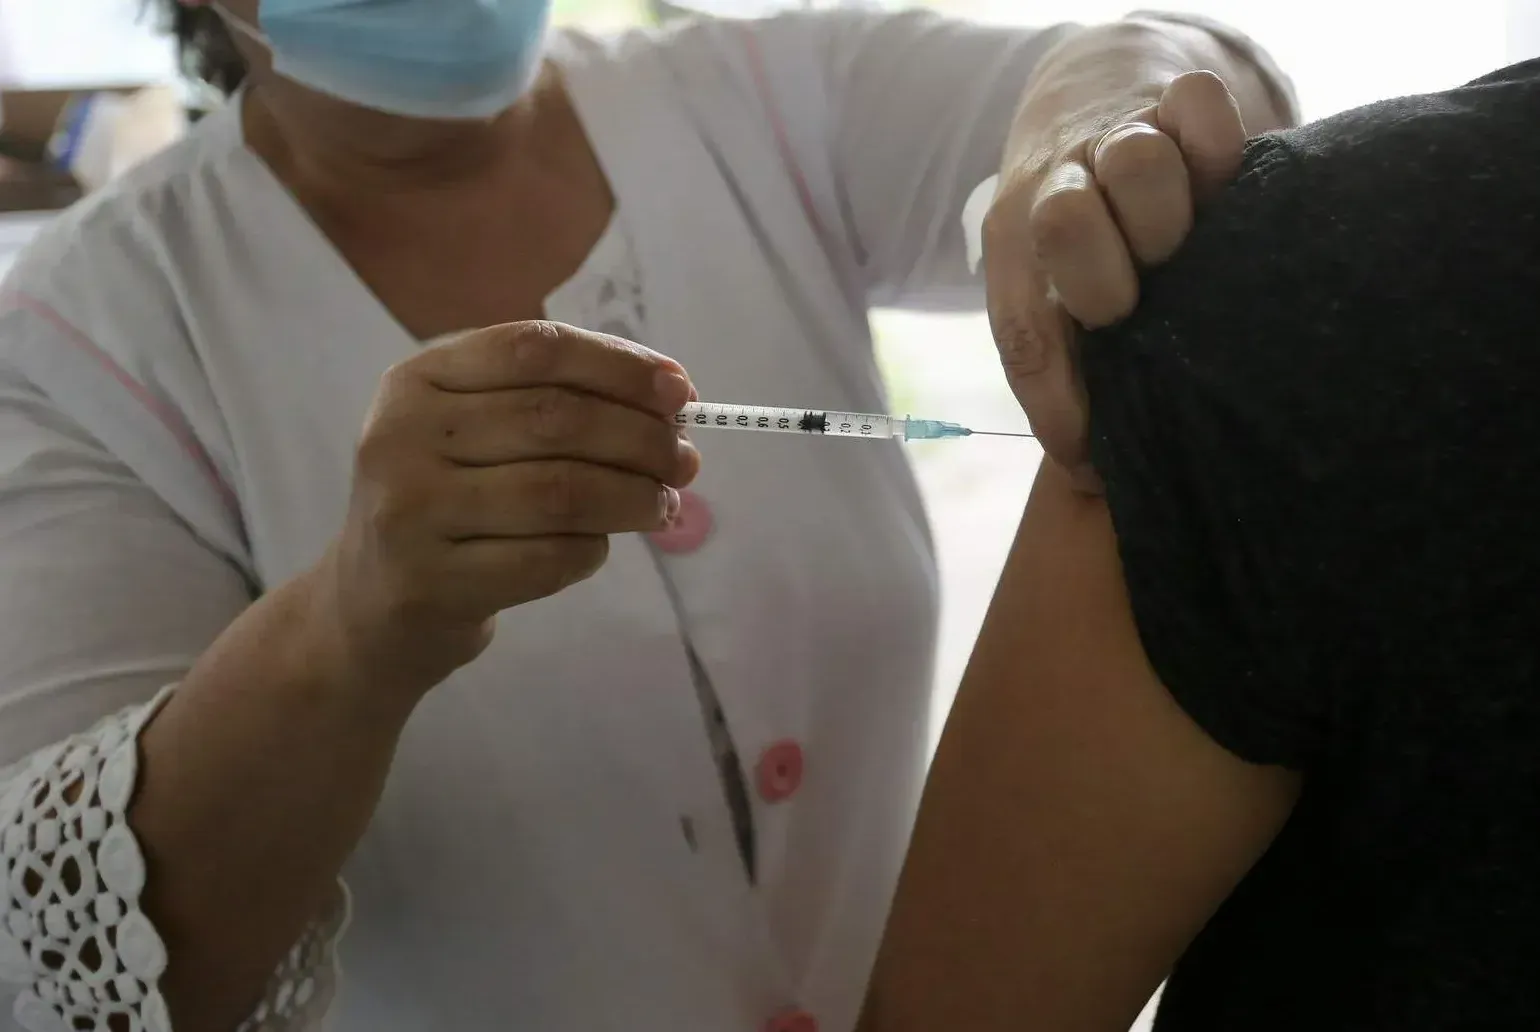 Em Santos, neste sábado (20), a vacinação será realizada em postos localizados nos morros, região central e Zona Noroeste